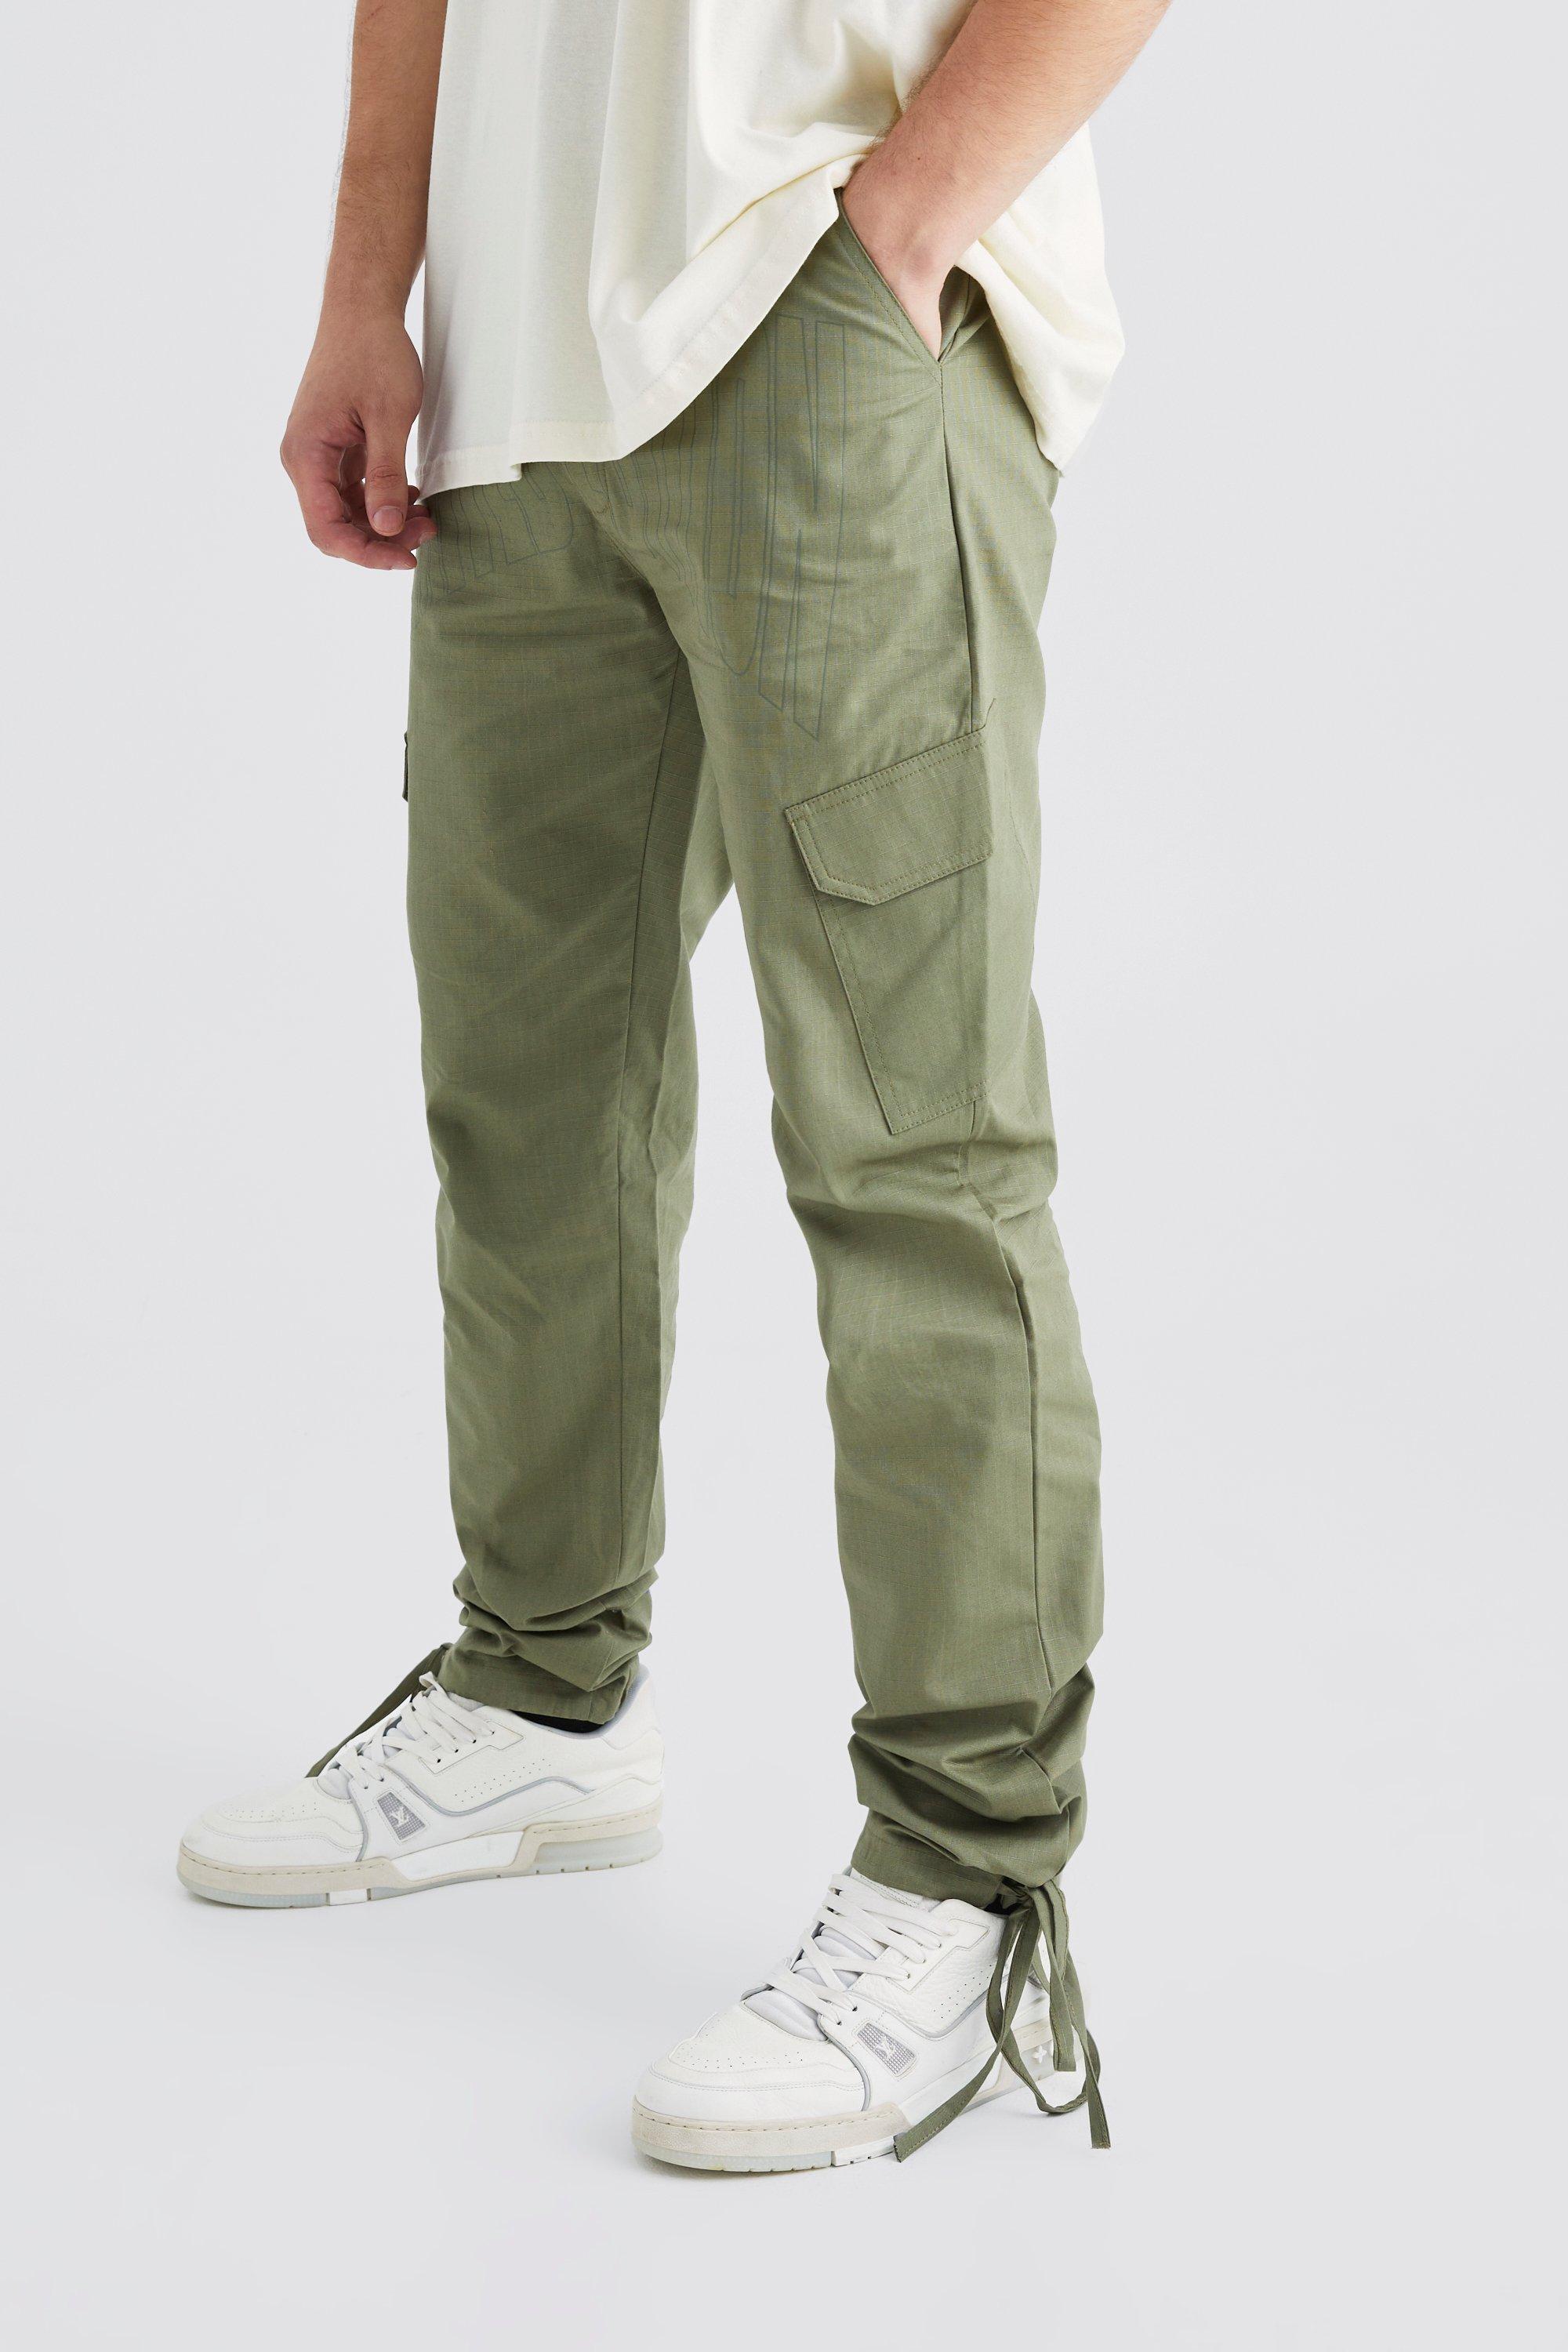 Image of Pantaloni Cargo Tall Slim Fit in nylon ripstop tono su tono, Verde